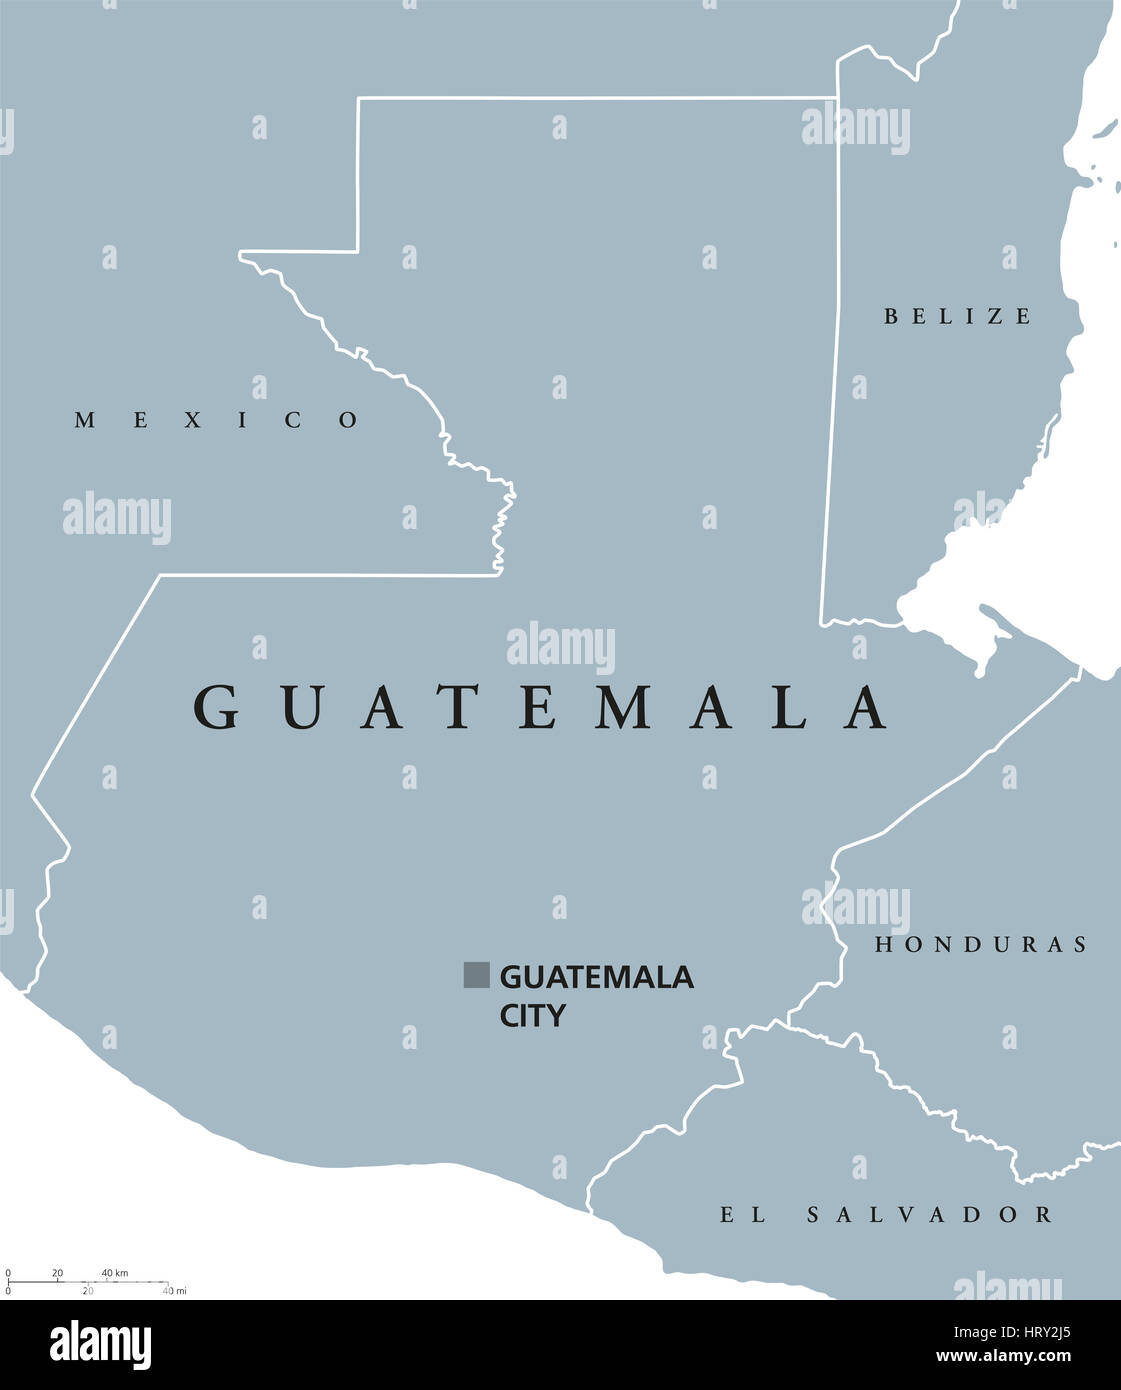 Mapa político de Guatemala con el capital y las fronteras nacionales. República y país en América Central, el núcleo de la civilización Maya. Foto de stock